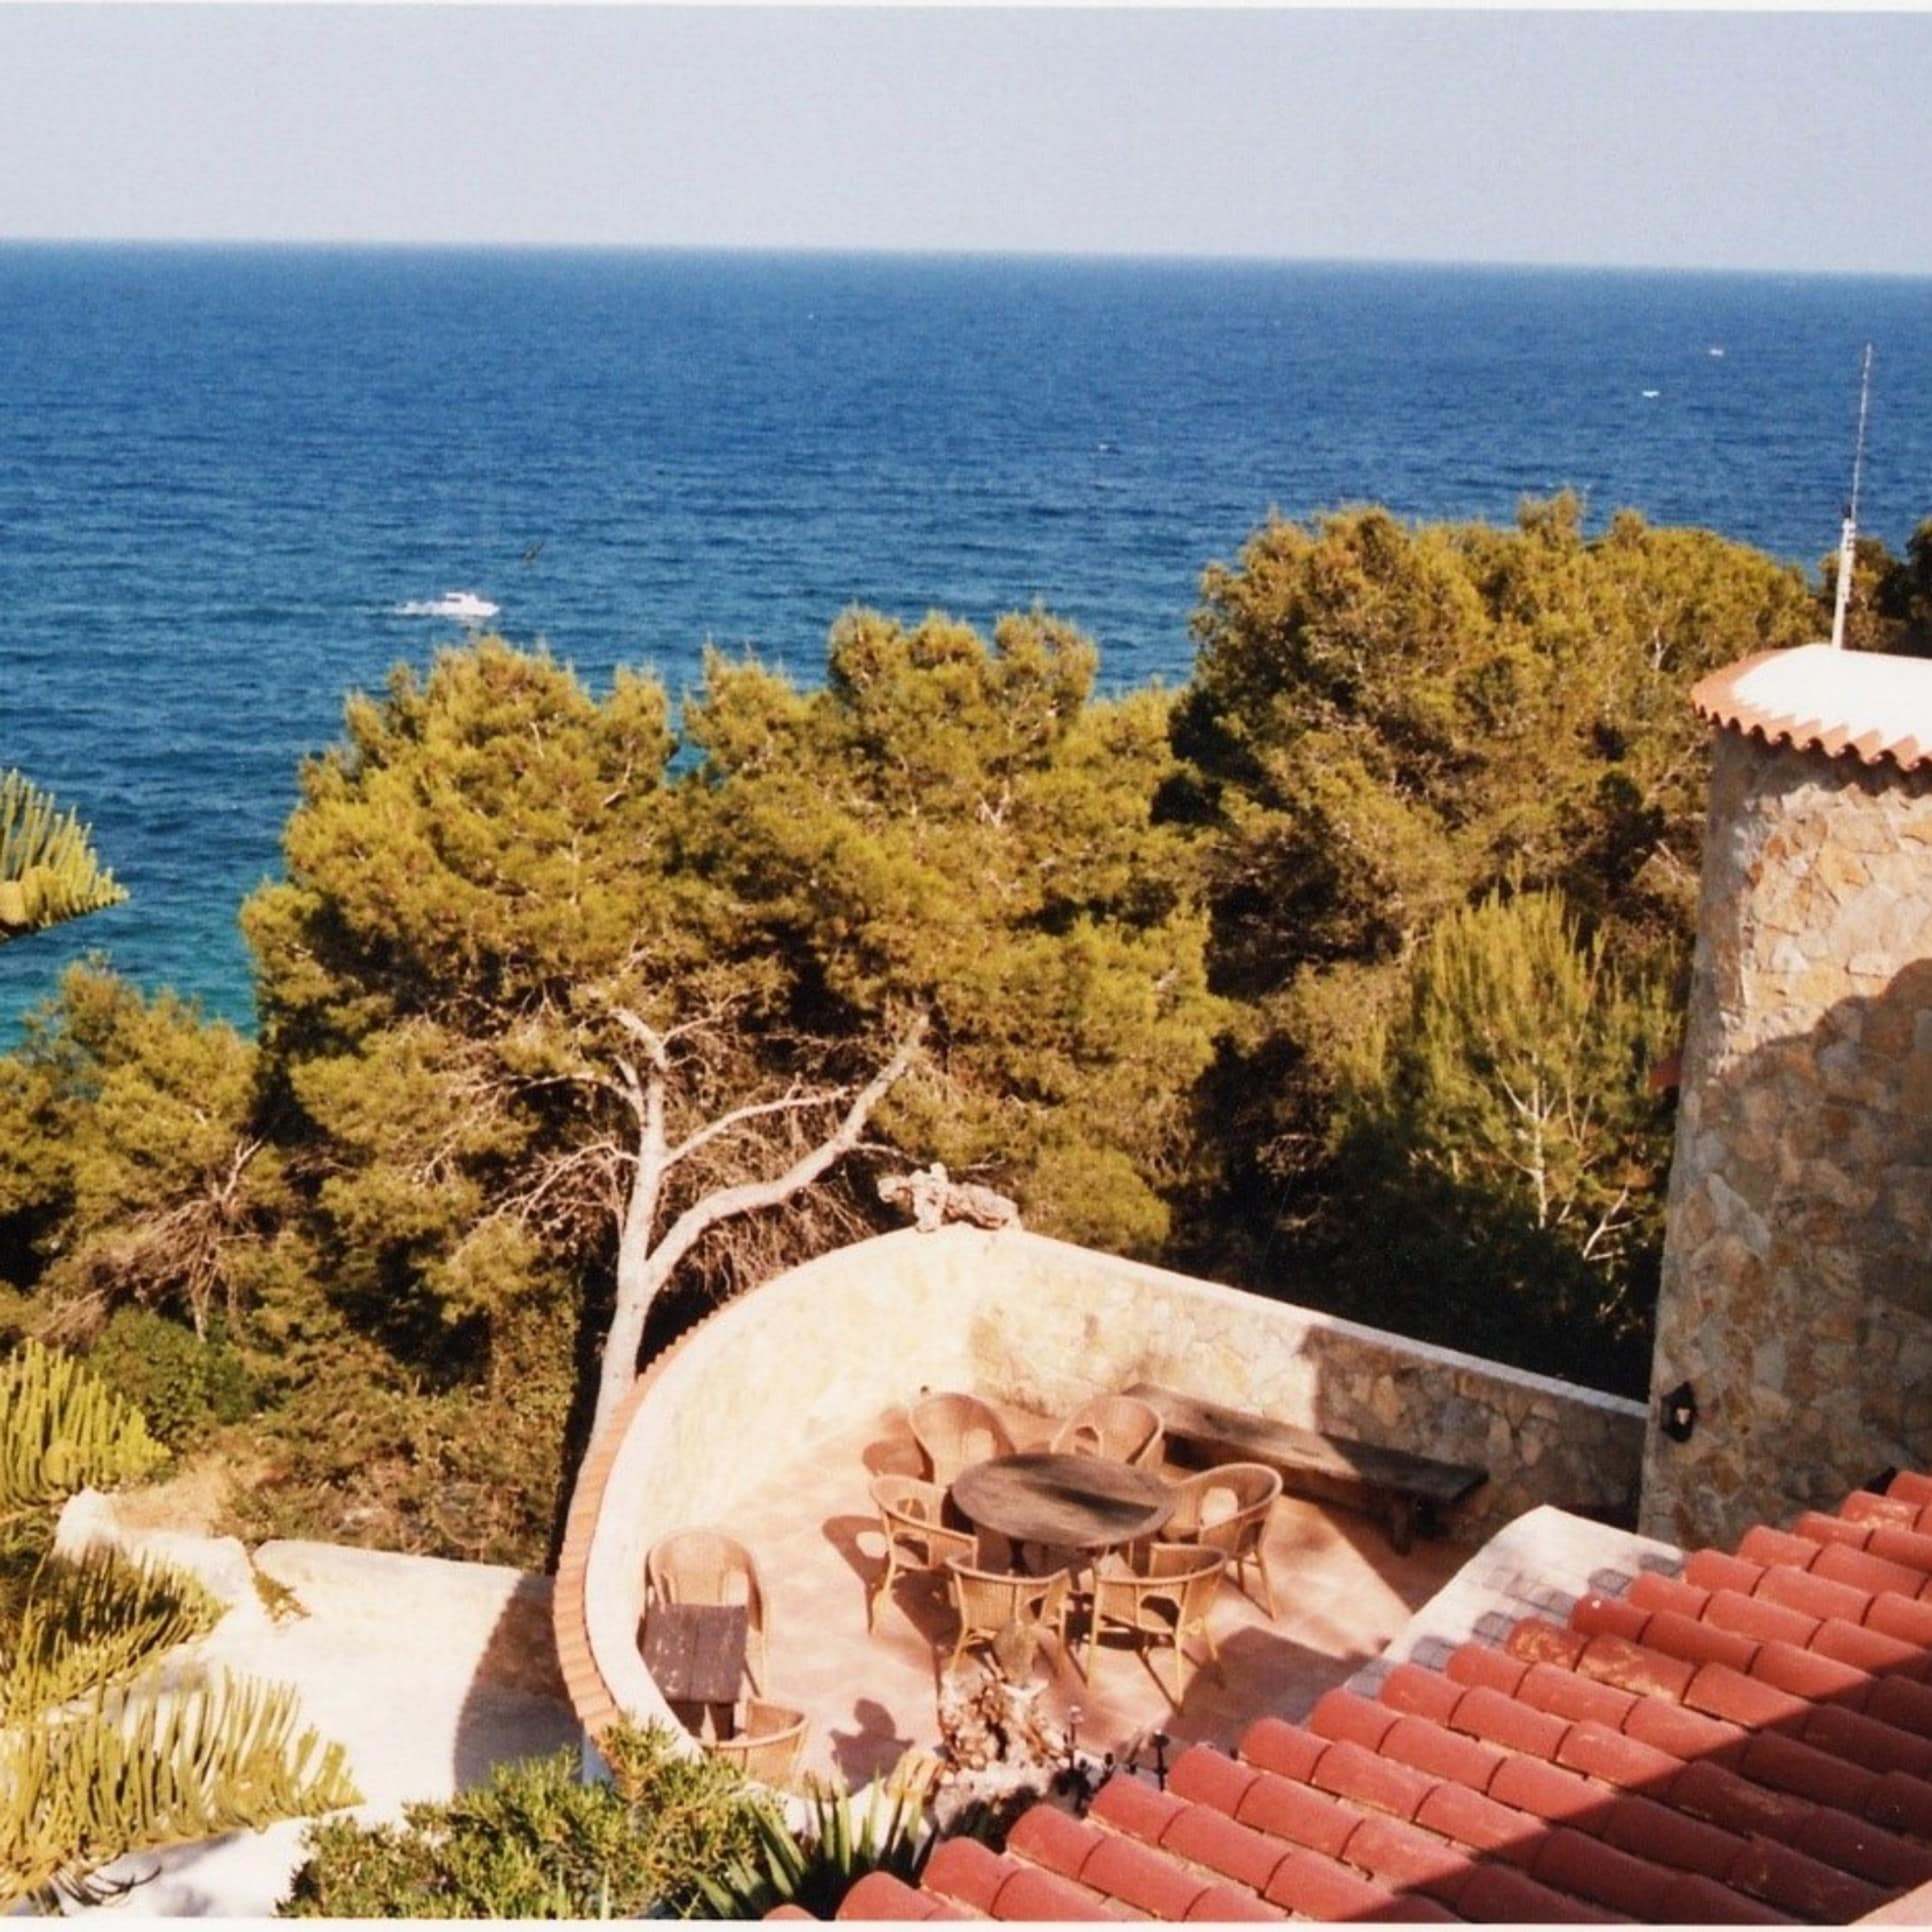 Blick auf das Meer von der Dachterrasse einer Finca auf Ibiza, die von Bäumen umgeben ist